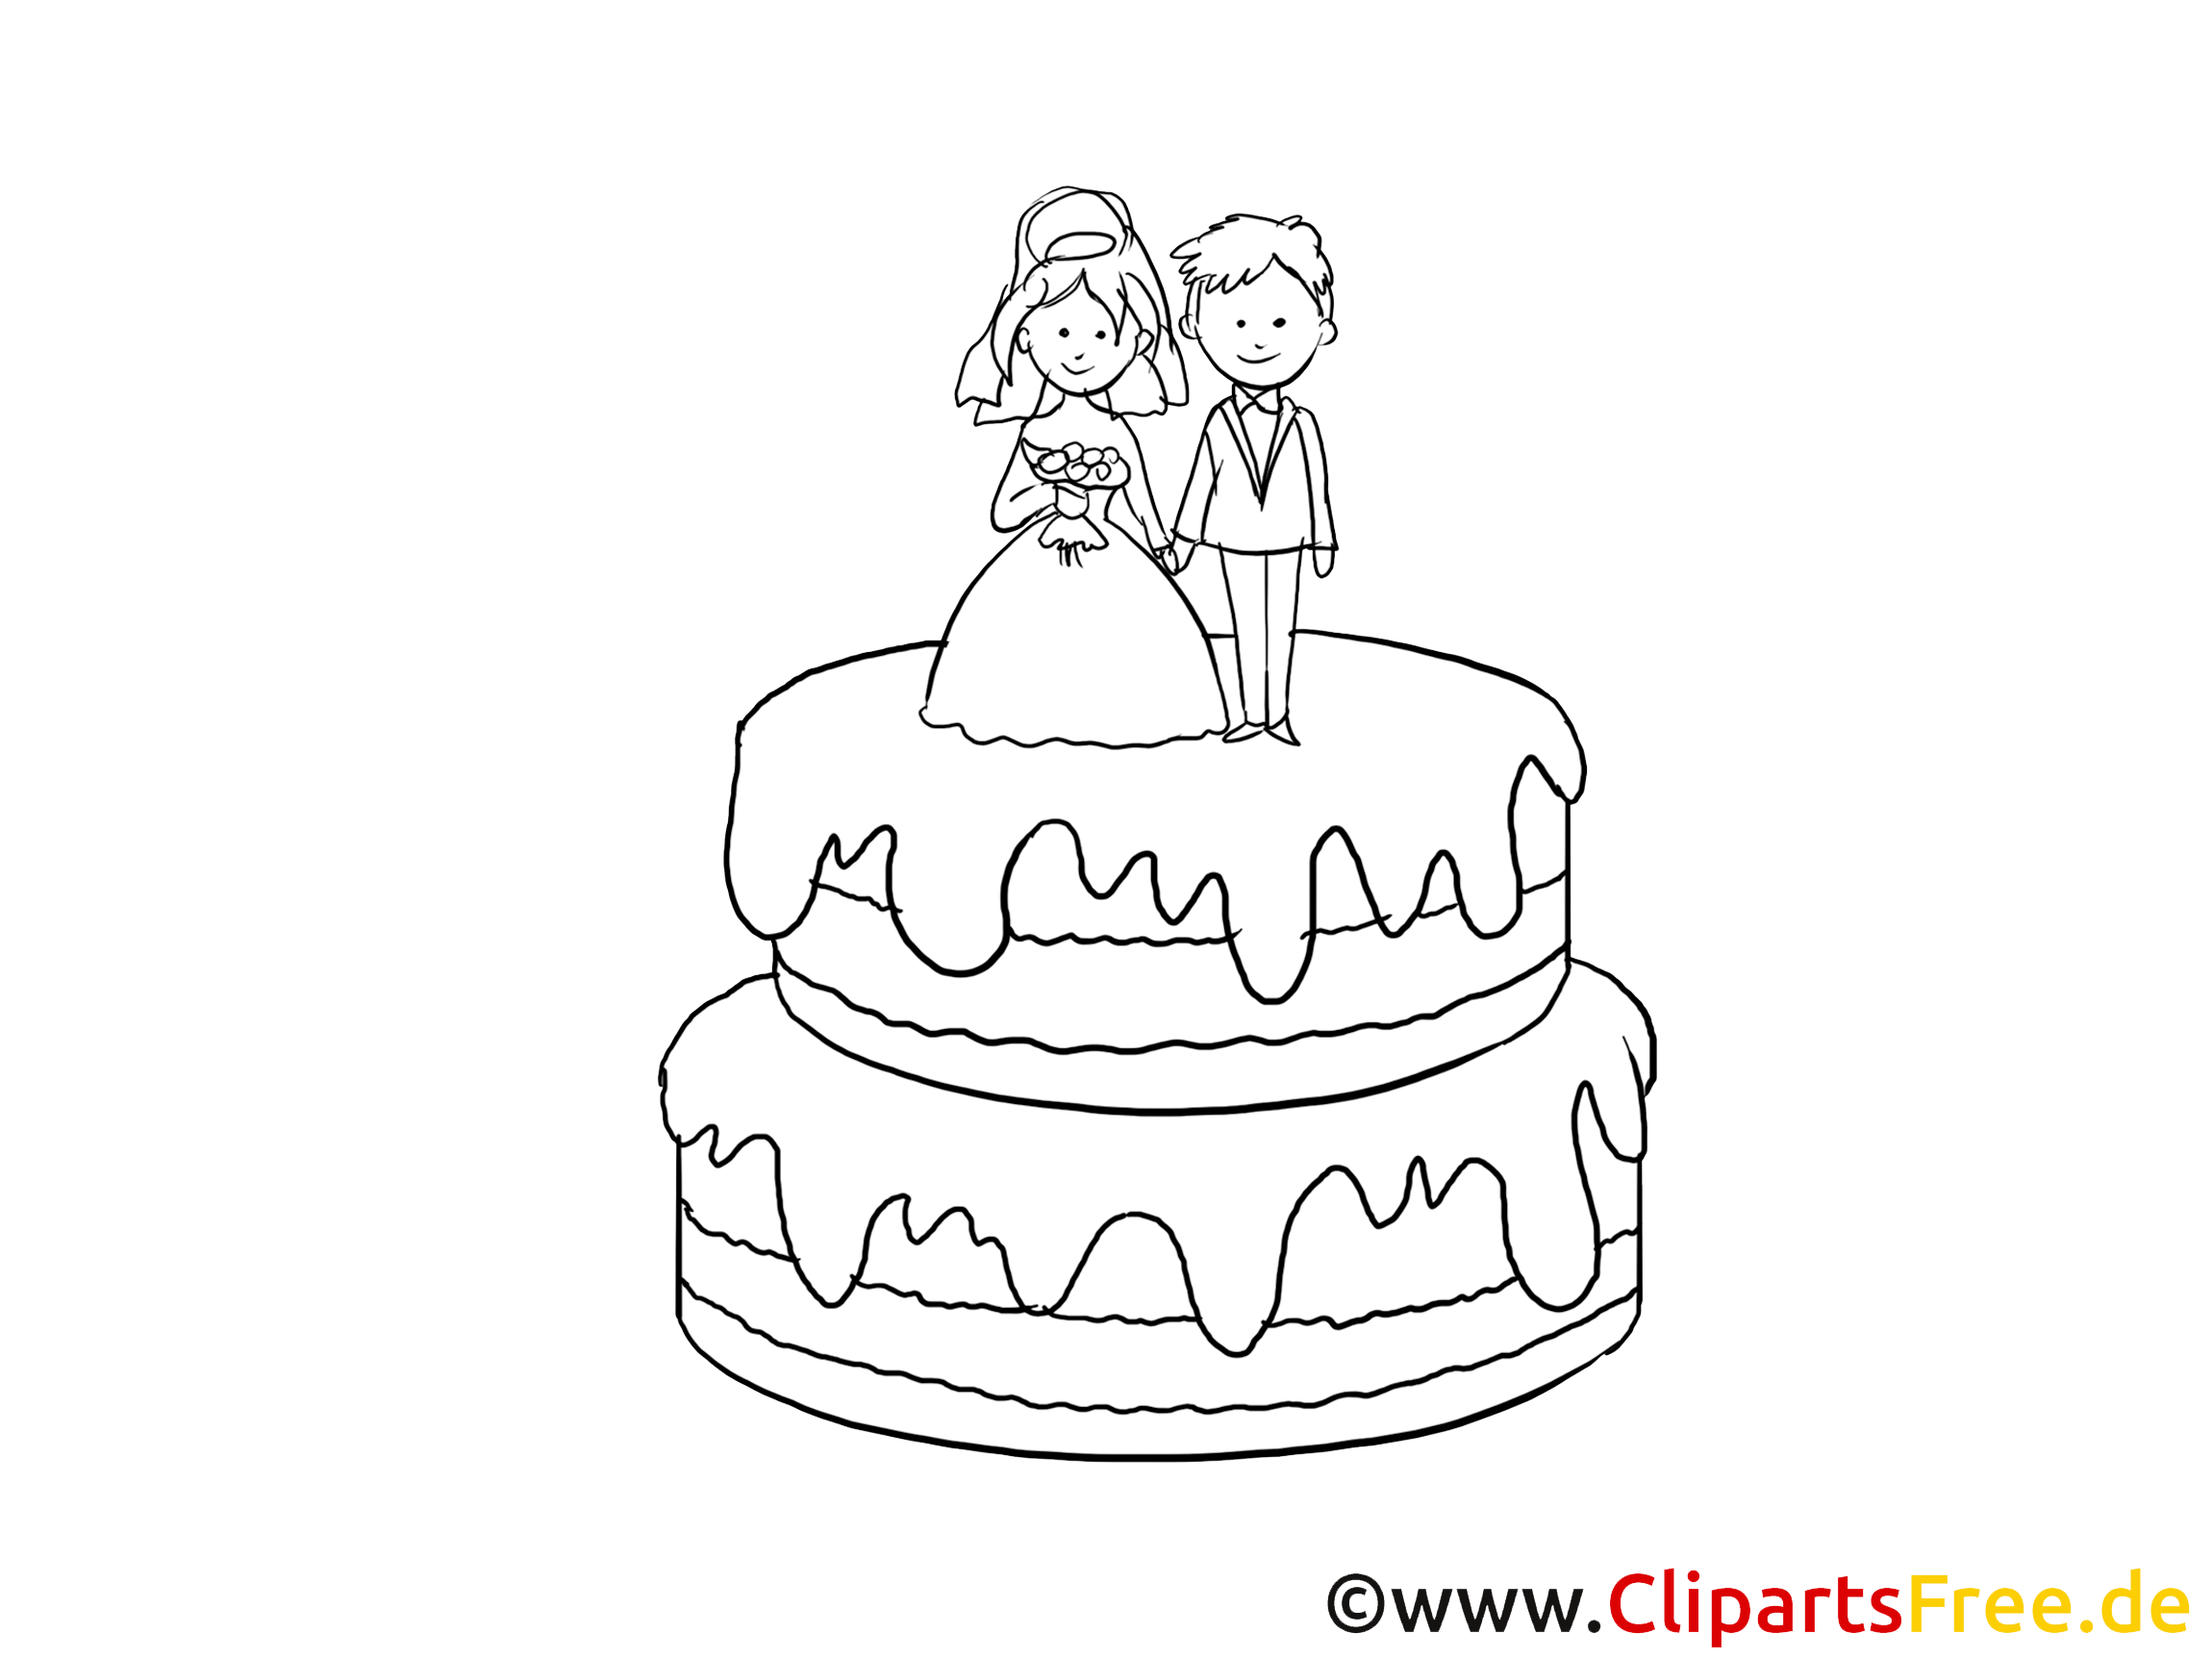 clipart torte kostenlos - photo #6